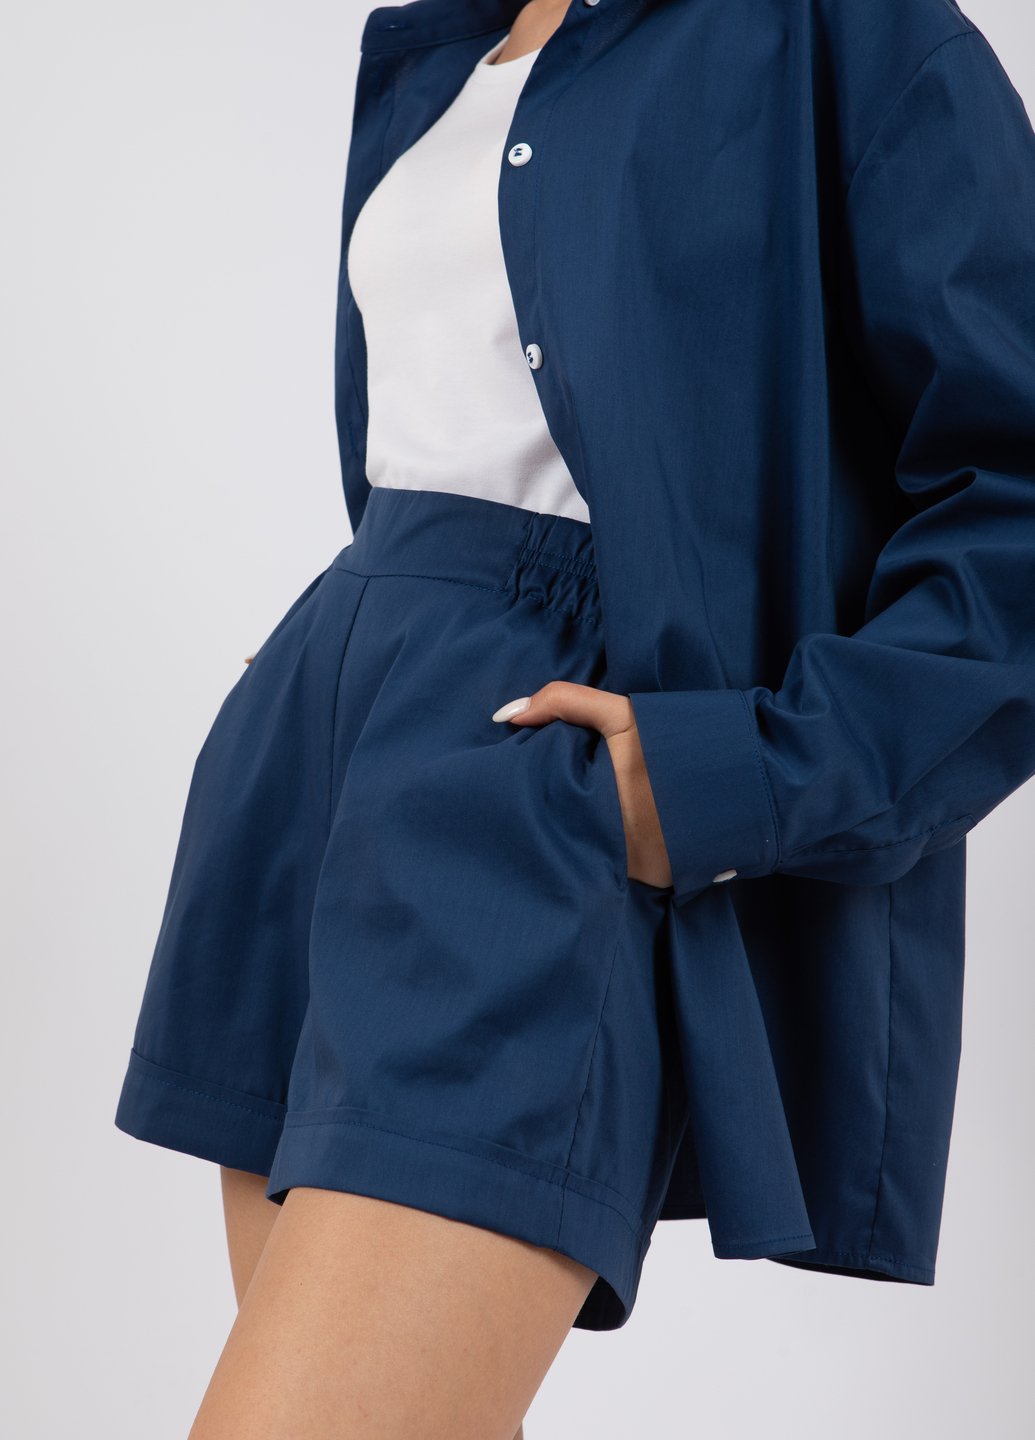 Купить Хлопковые шорты женские Merlini Тарент 300000016 - Синий, 42-44 в интернет-магазине